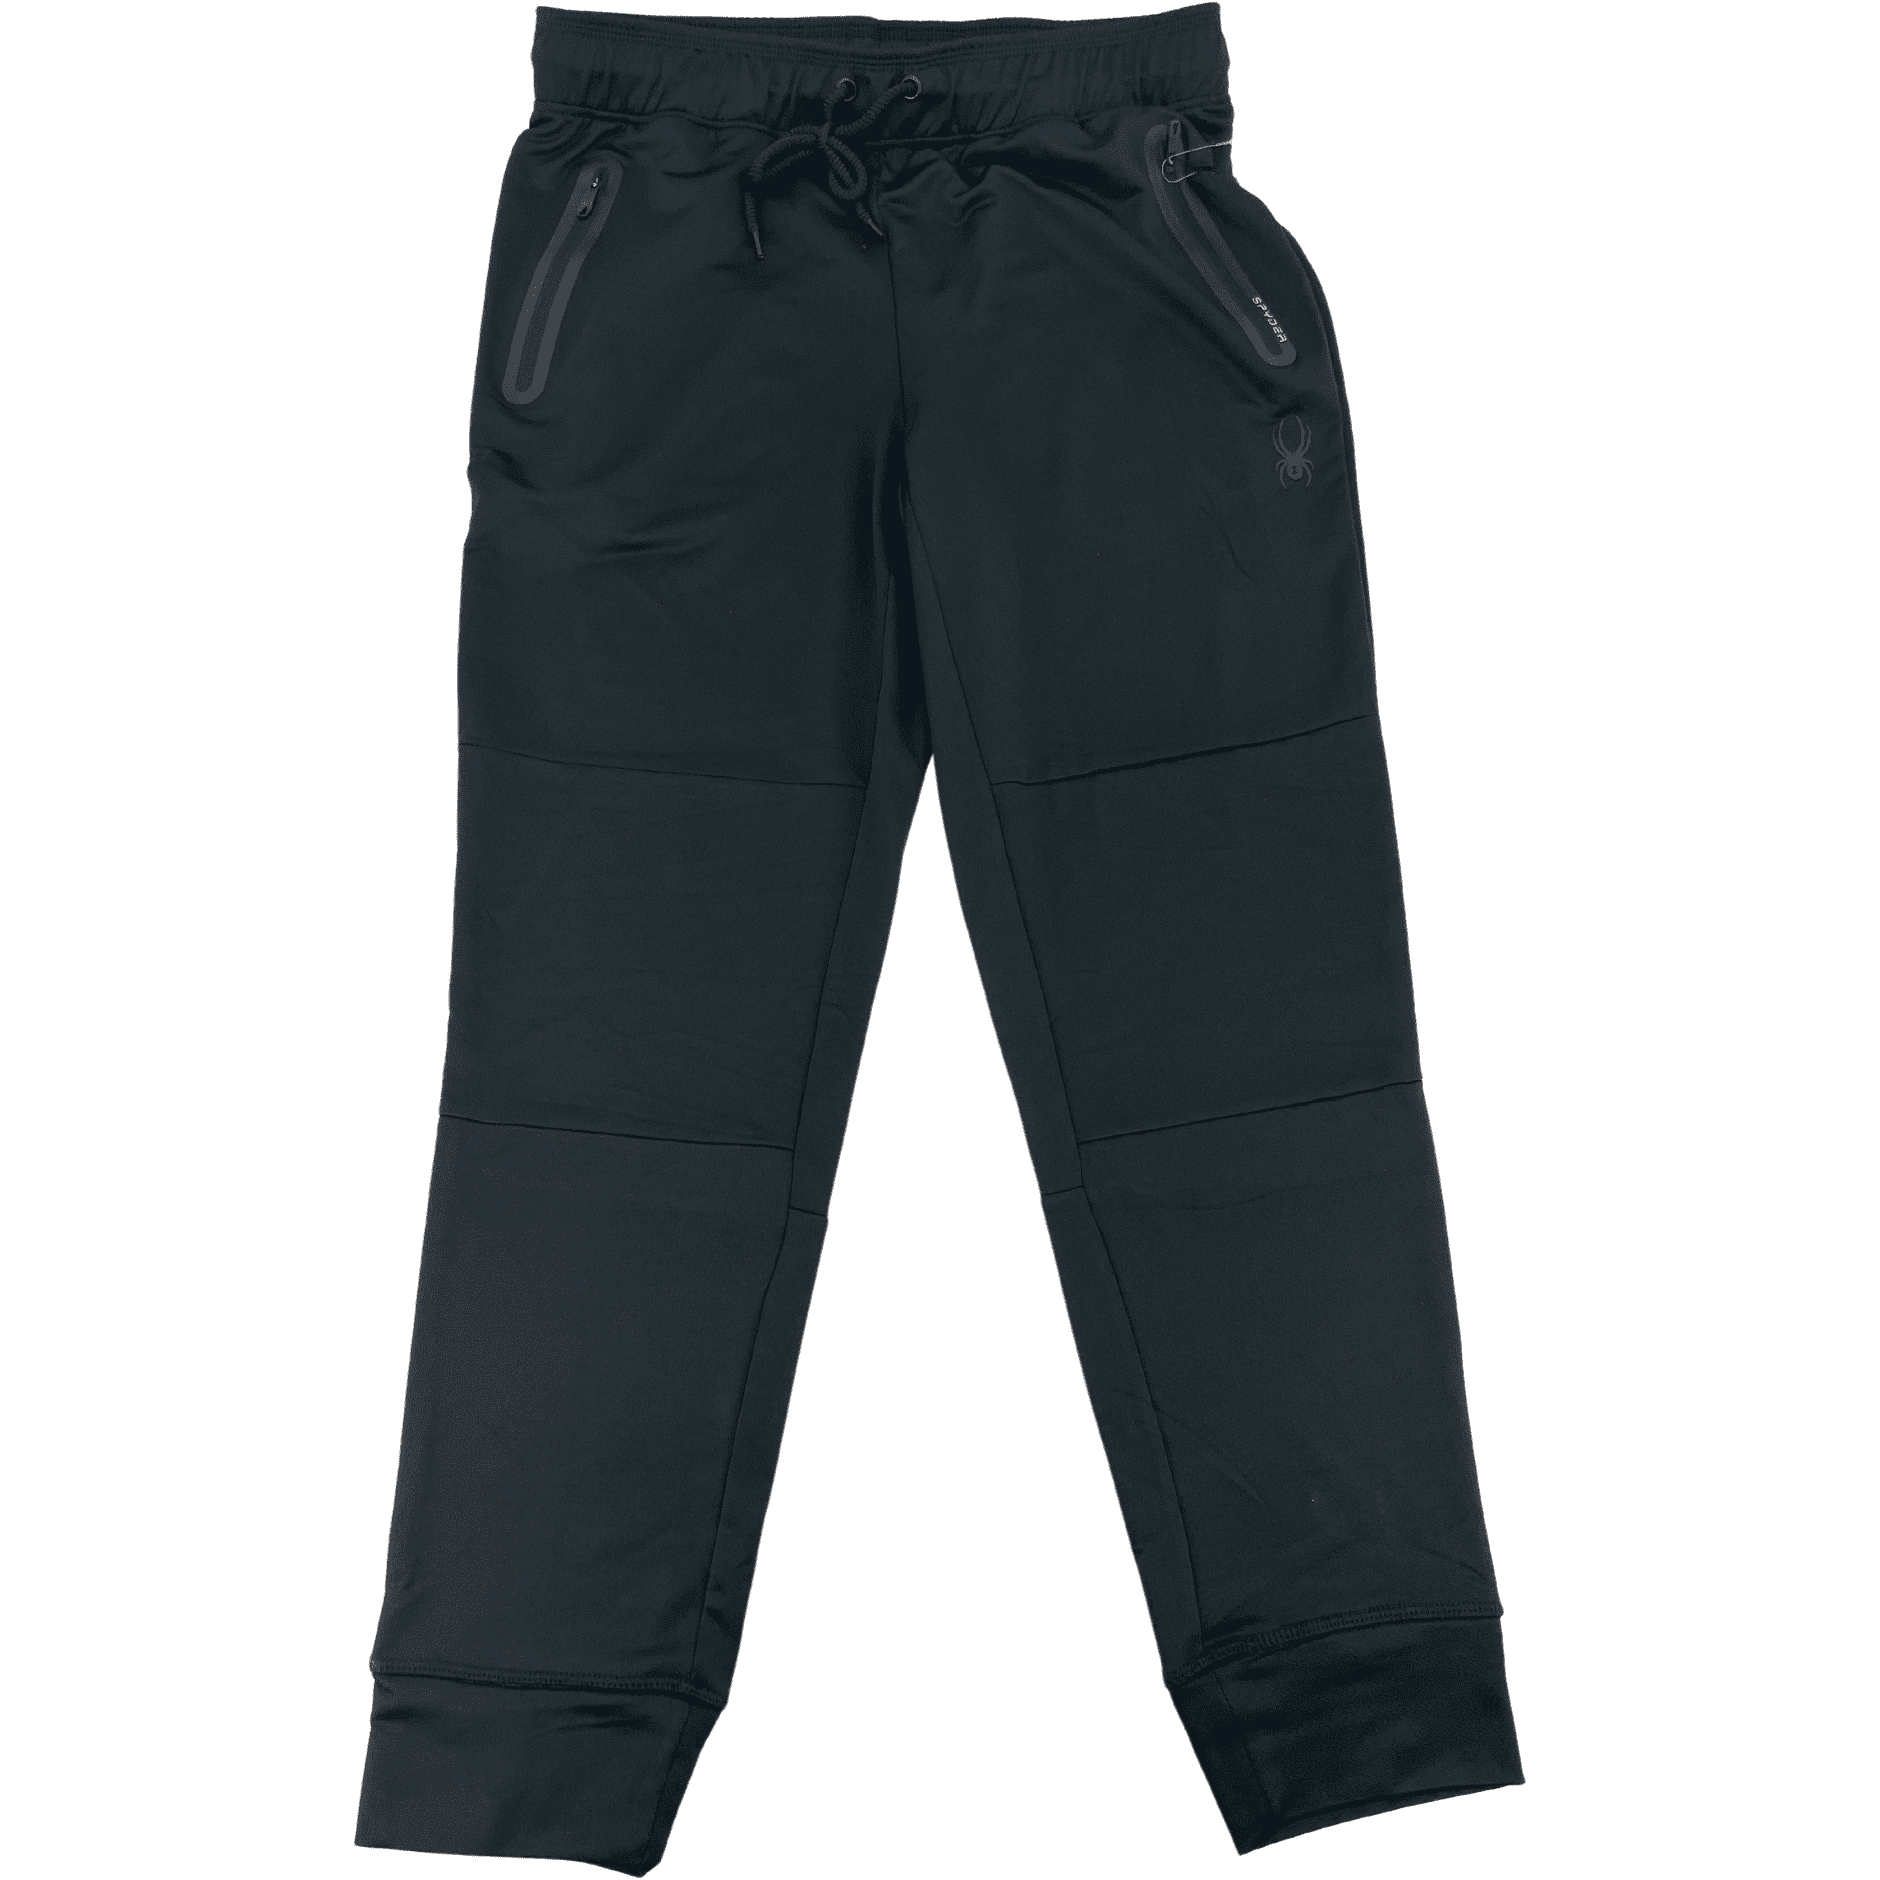 Spyder Men's Sweatpants / Activewear / Lounge Pants / Black / Various Sizes